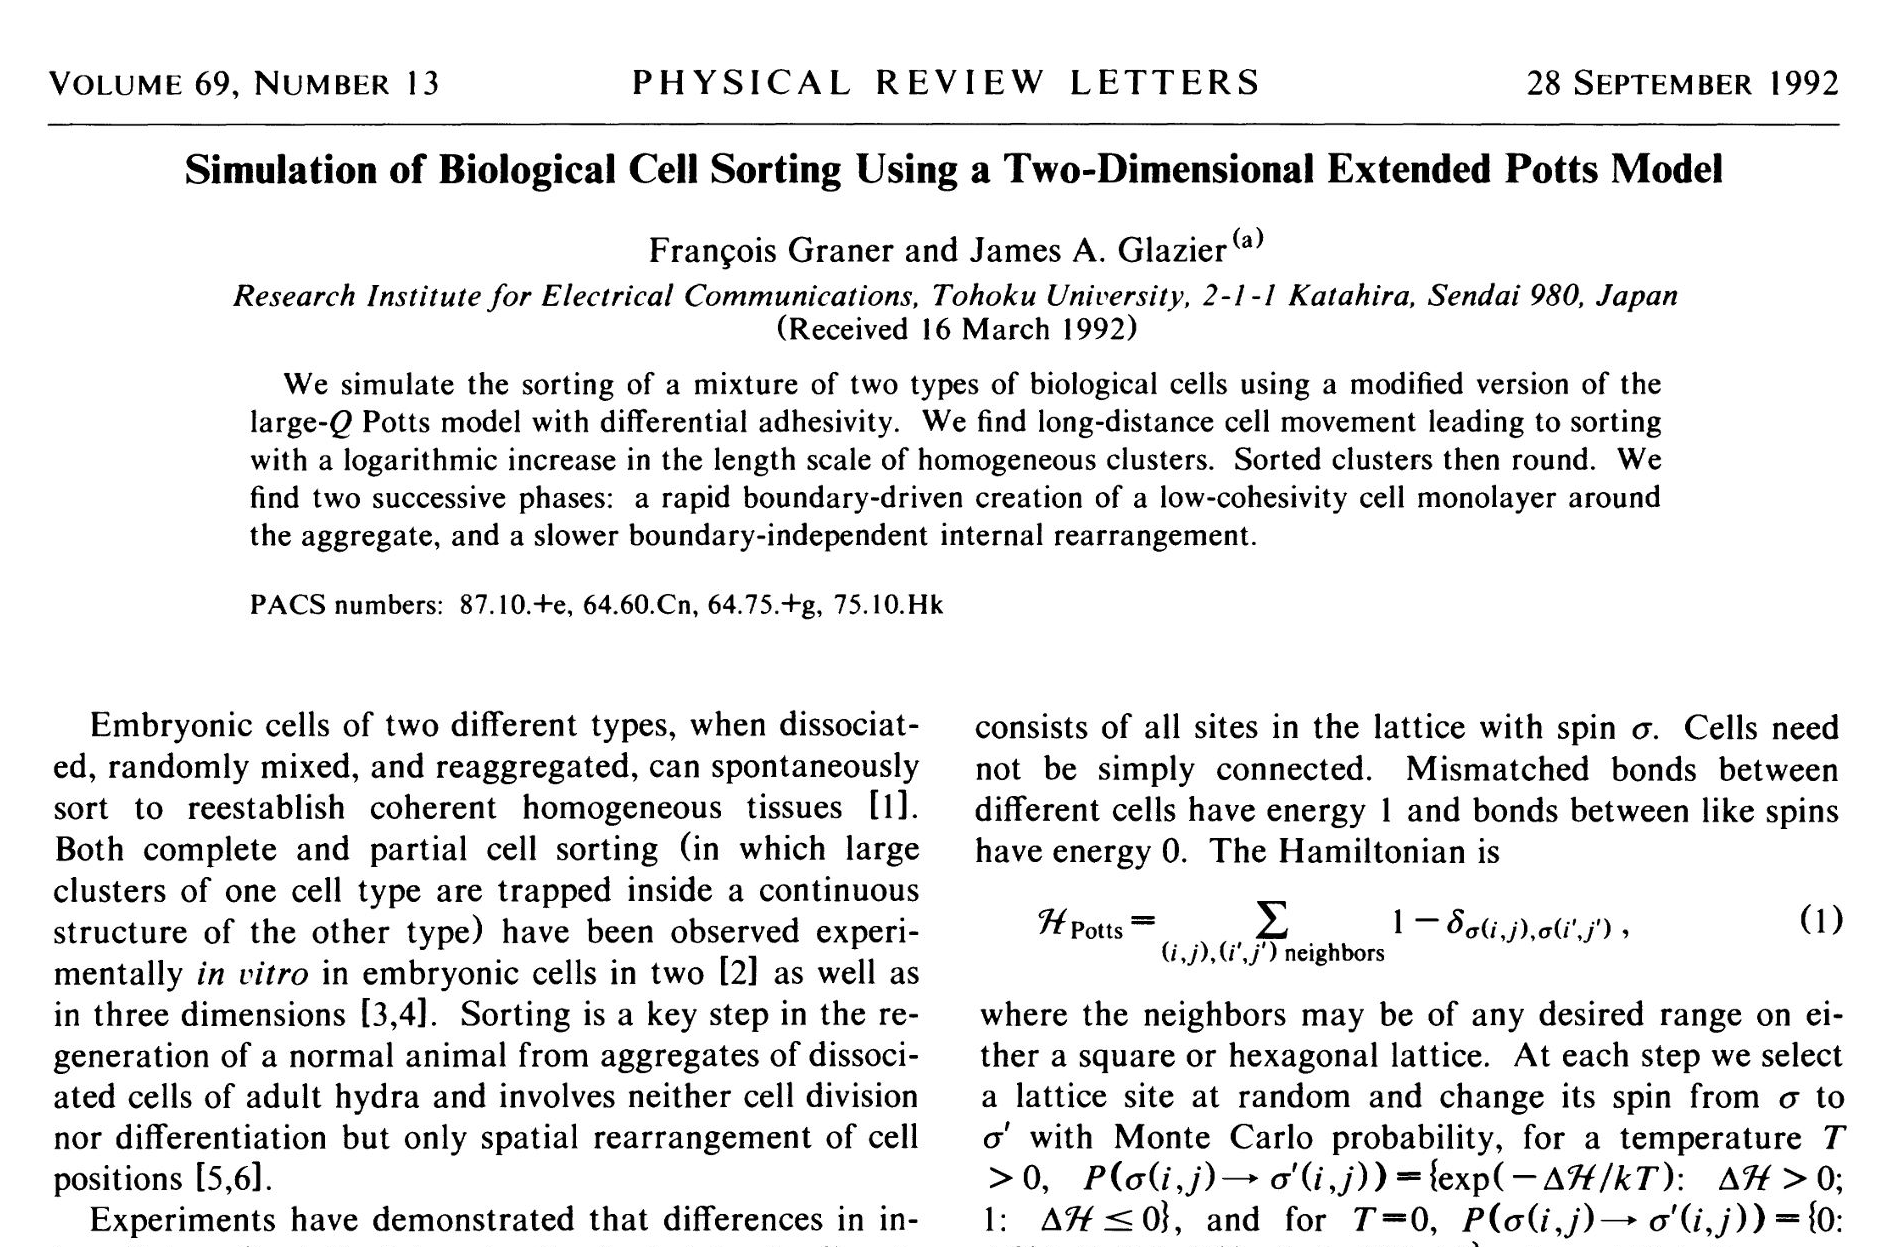 Phys. Rev. Lett. 69, 2013